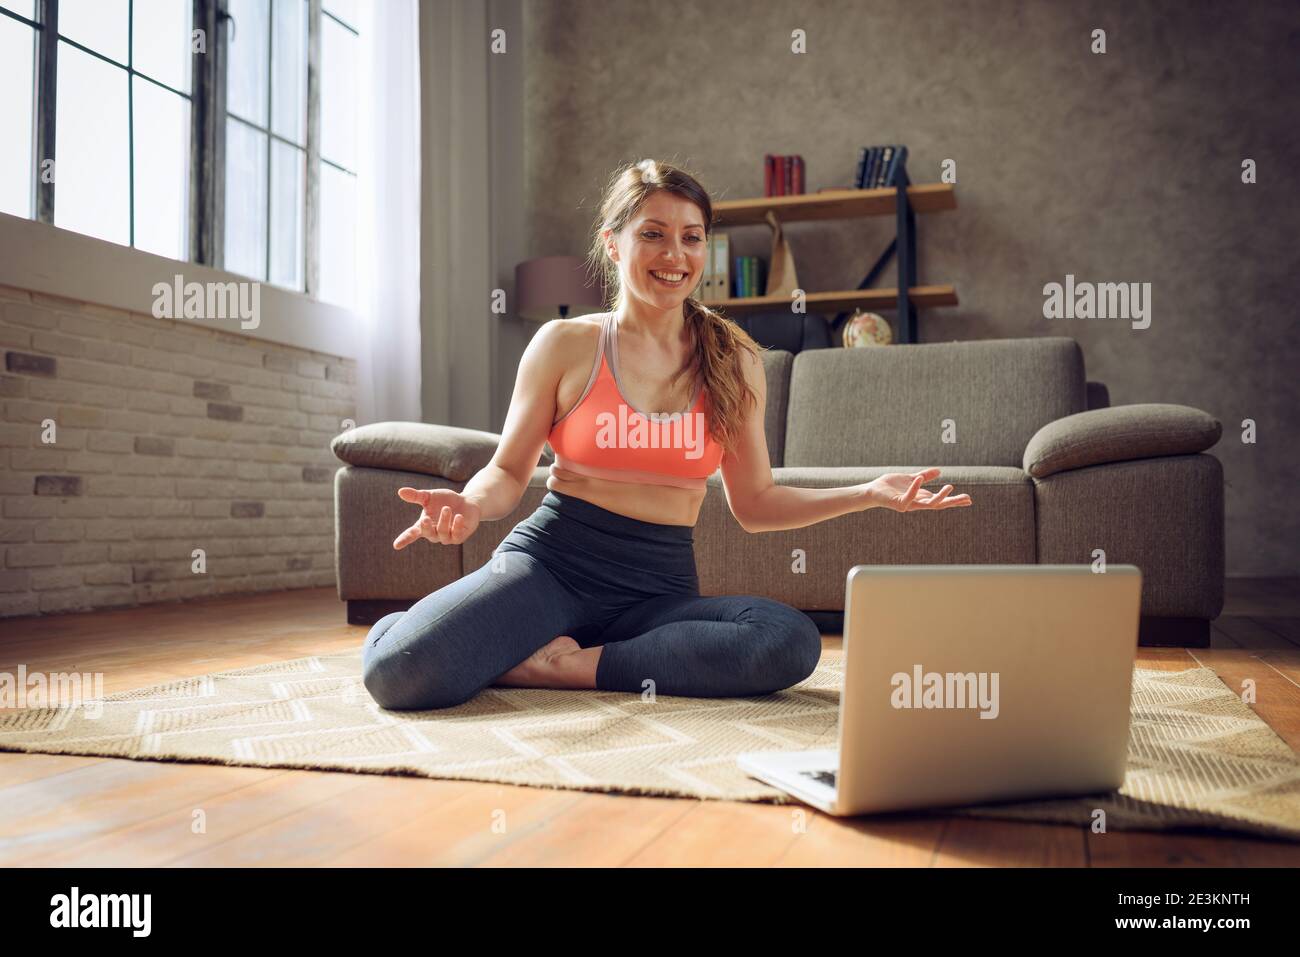 Une jeune femme suit avec un ordinateur portable un exercice de gym. Elle est à la maison en raison de la quarantaine du coronavirus codiv-19 Banque D'Images